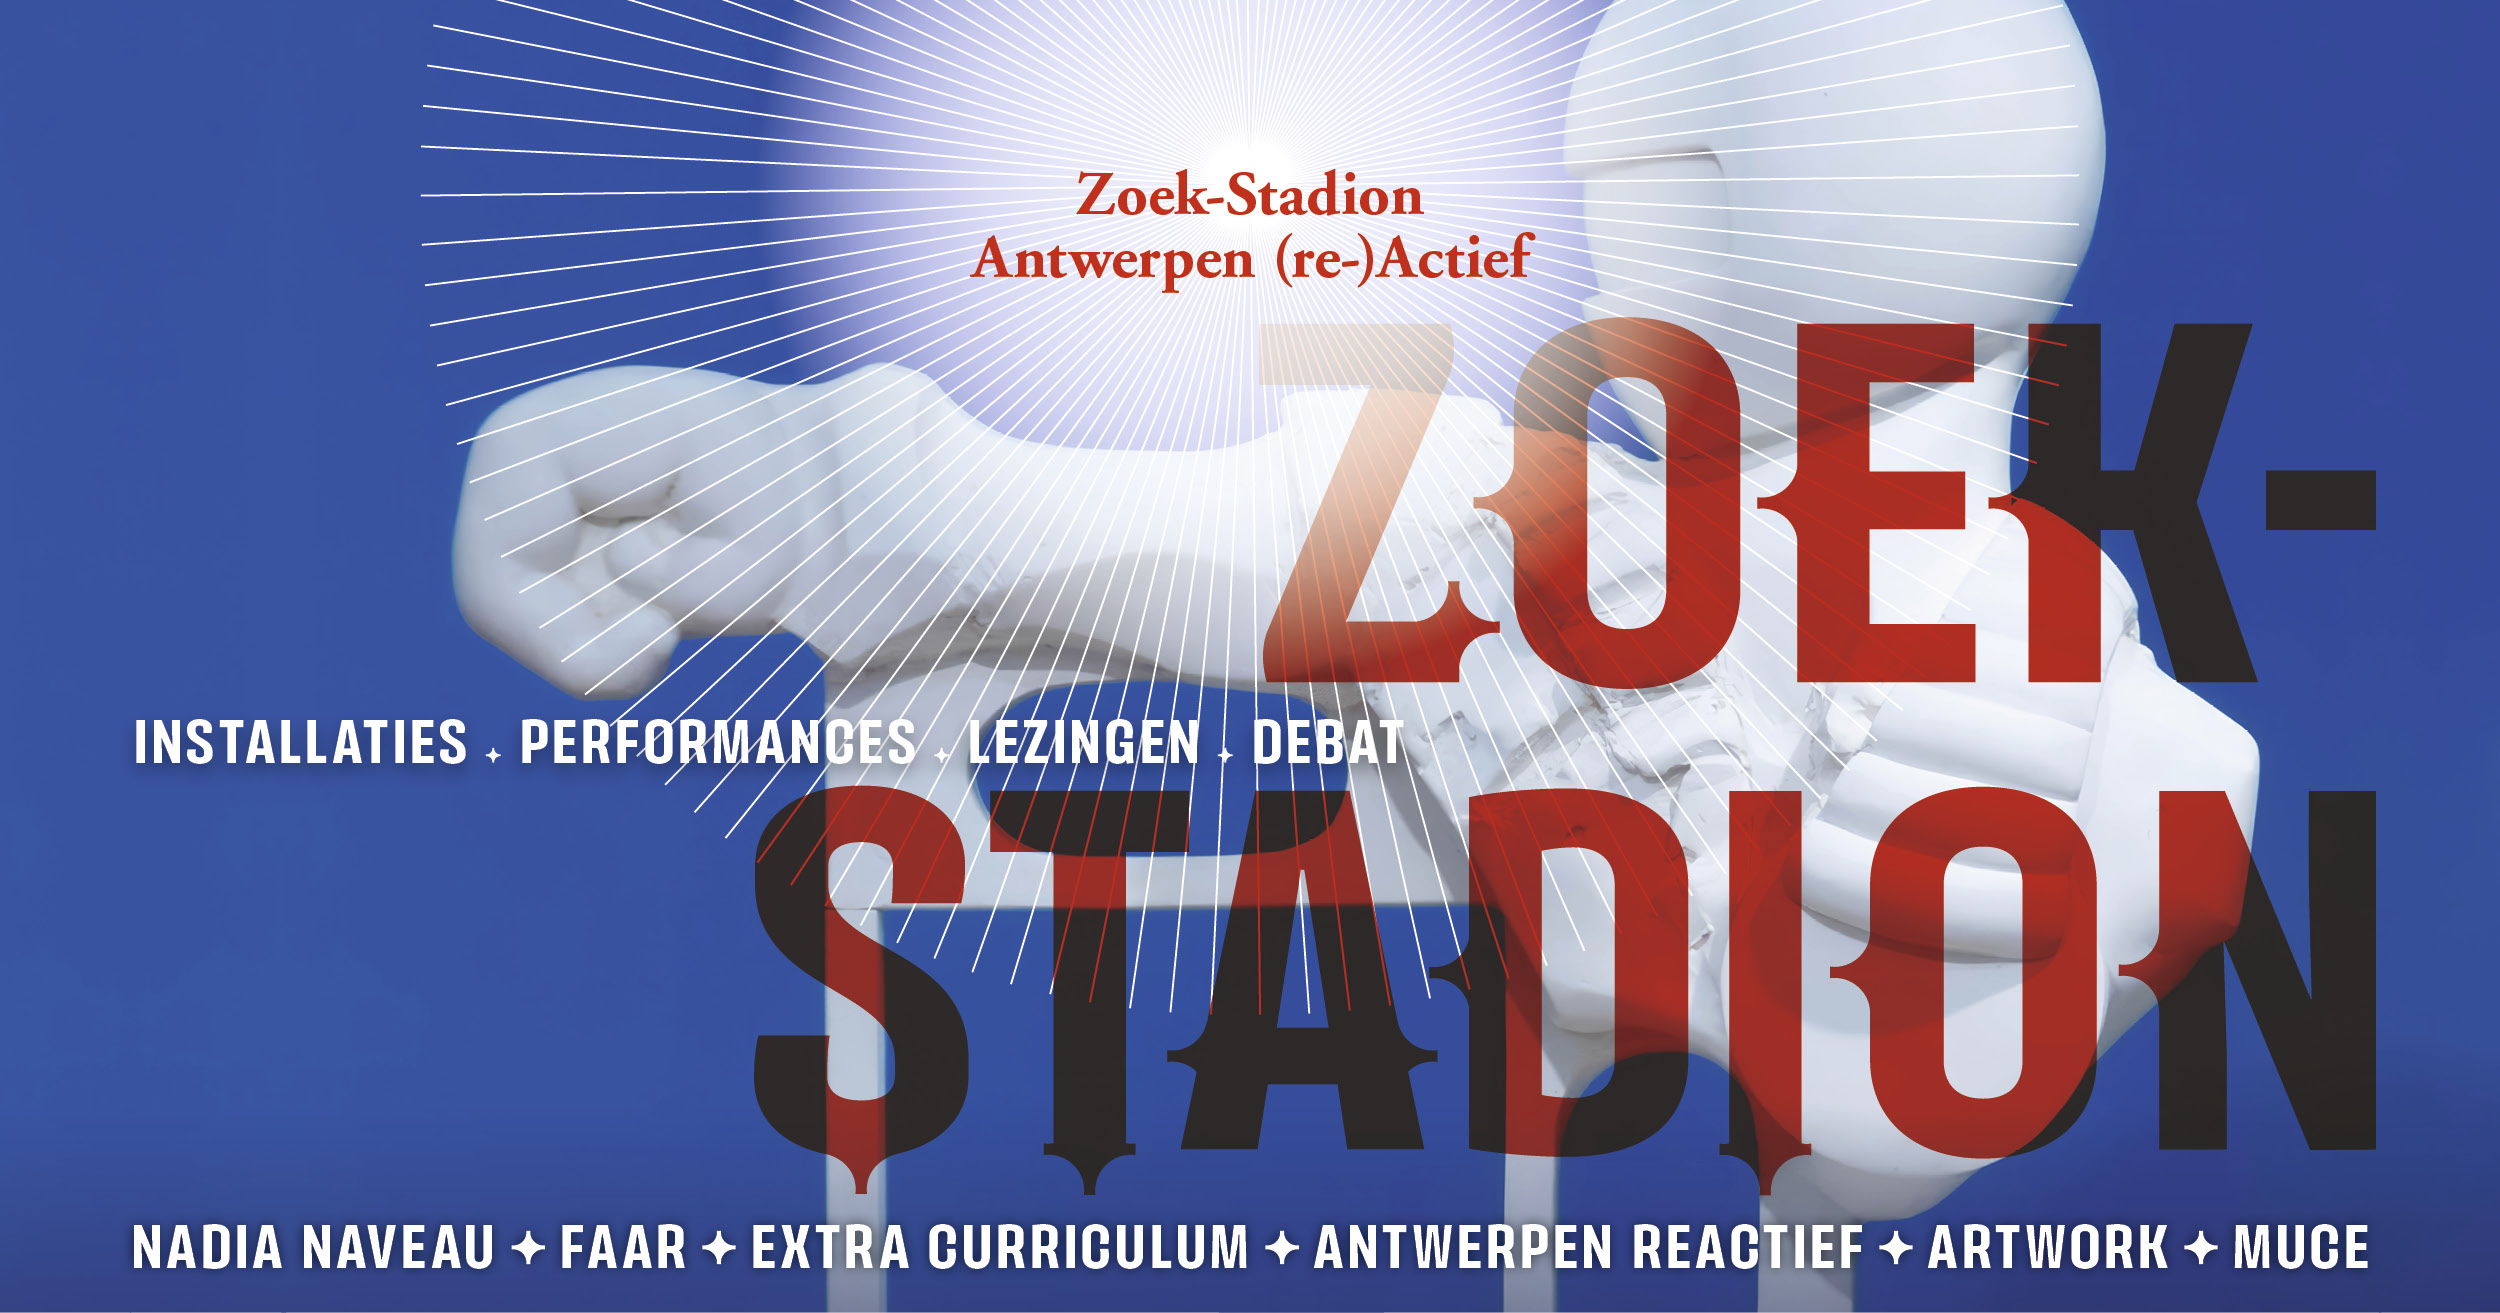 Zoek-Stadion, artistiek laboratorium van 24 juni tot en met 28 november 2023 in het Havenhuis in Antwerpen